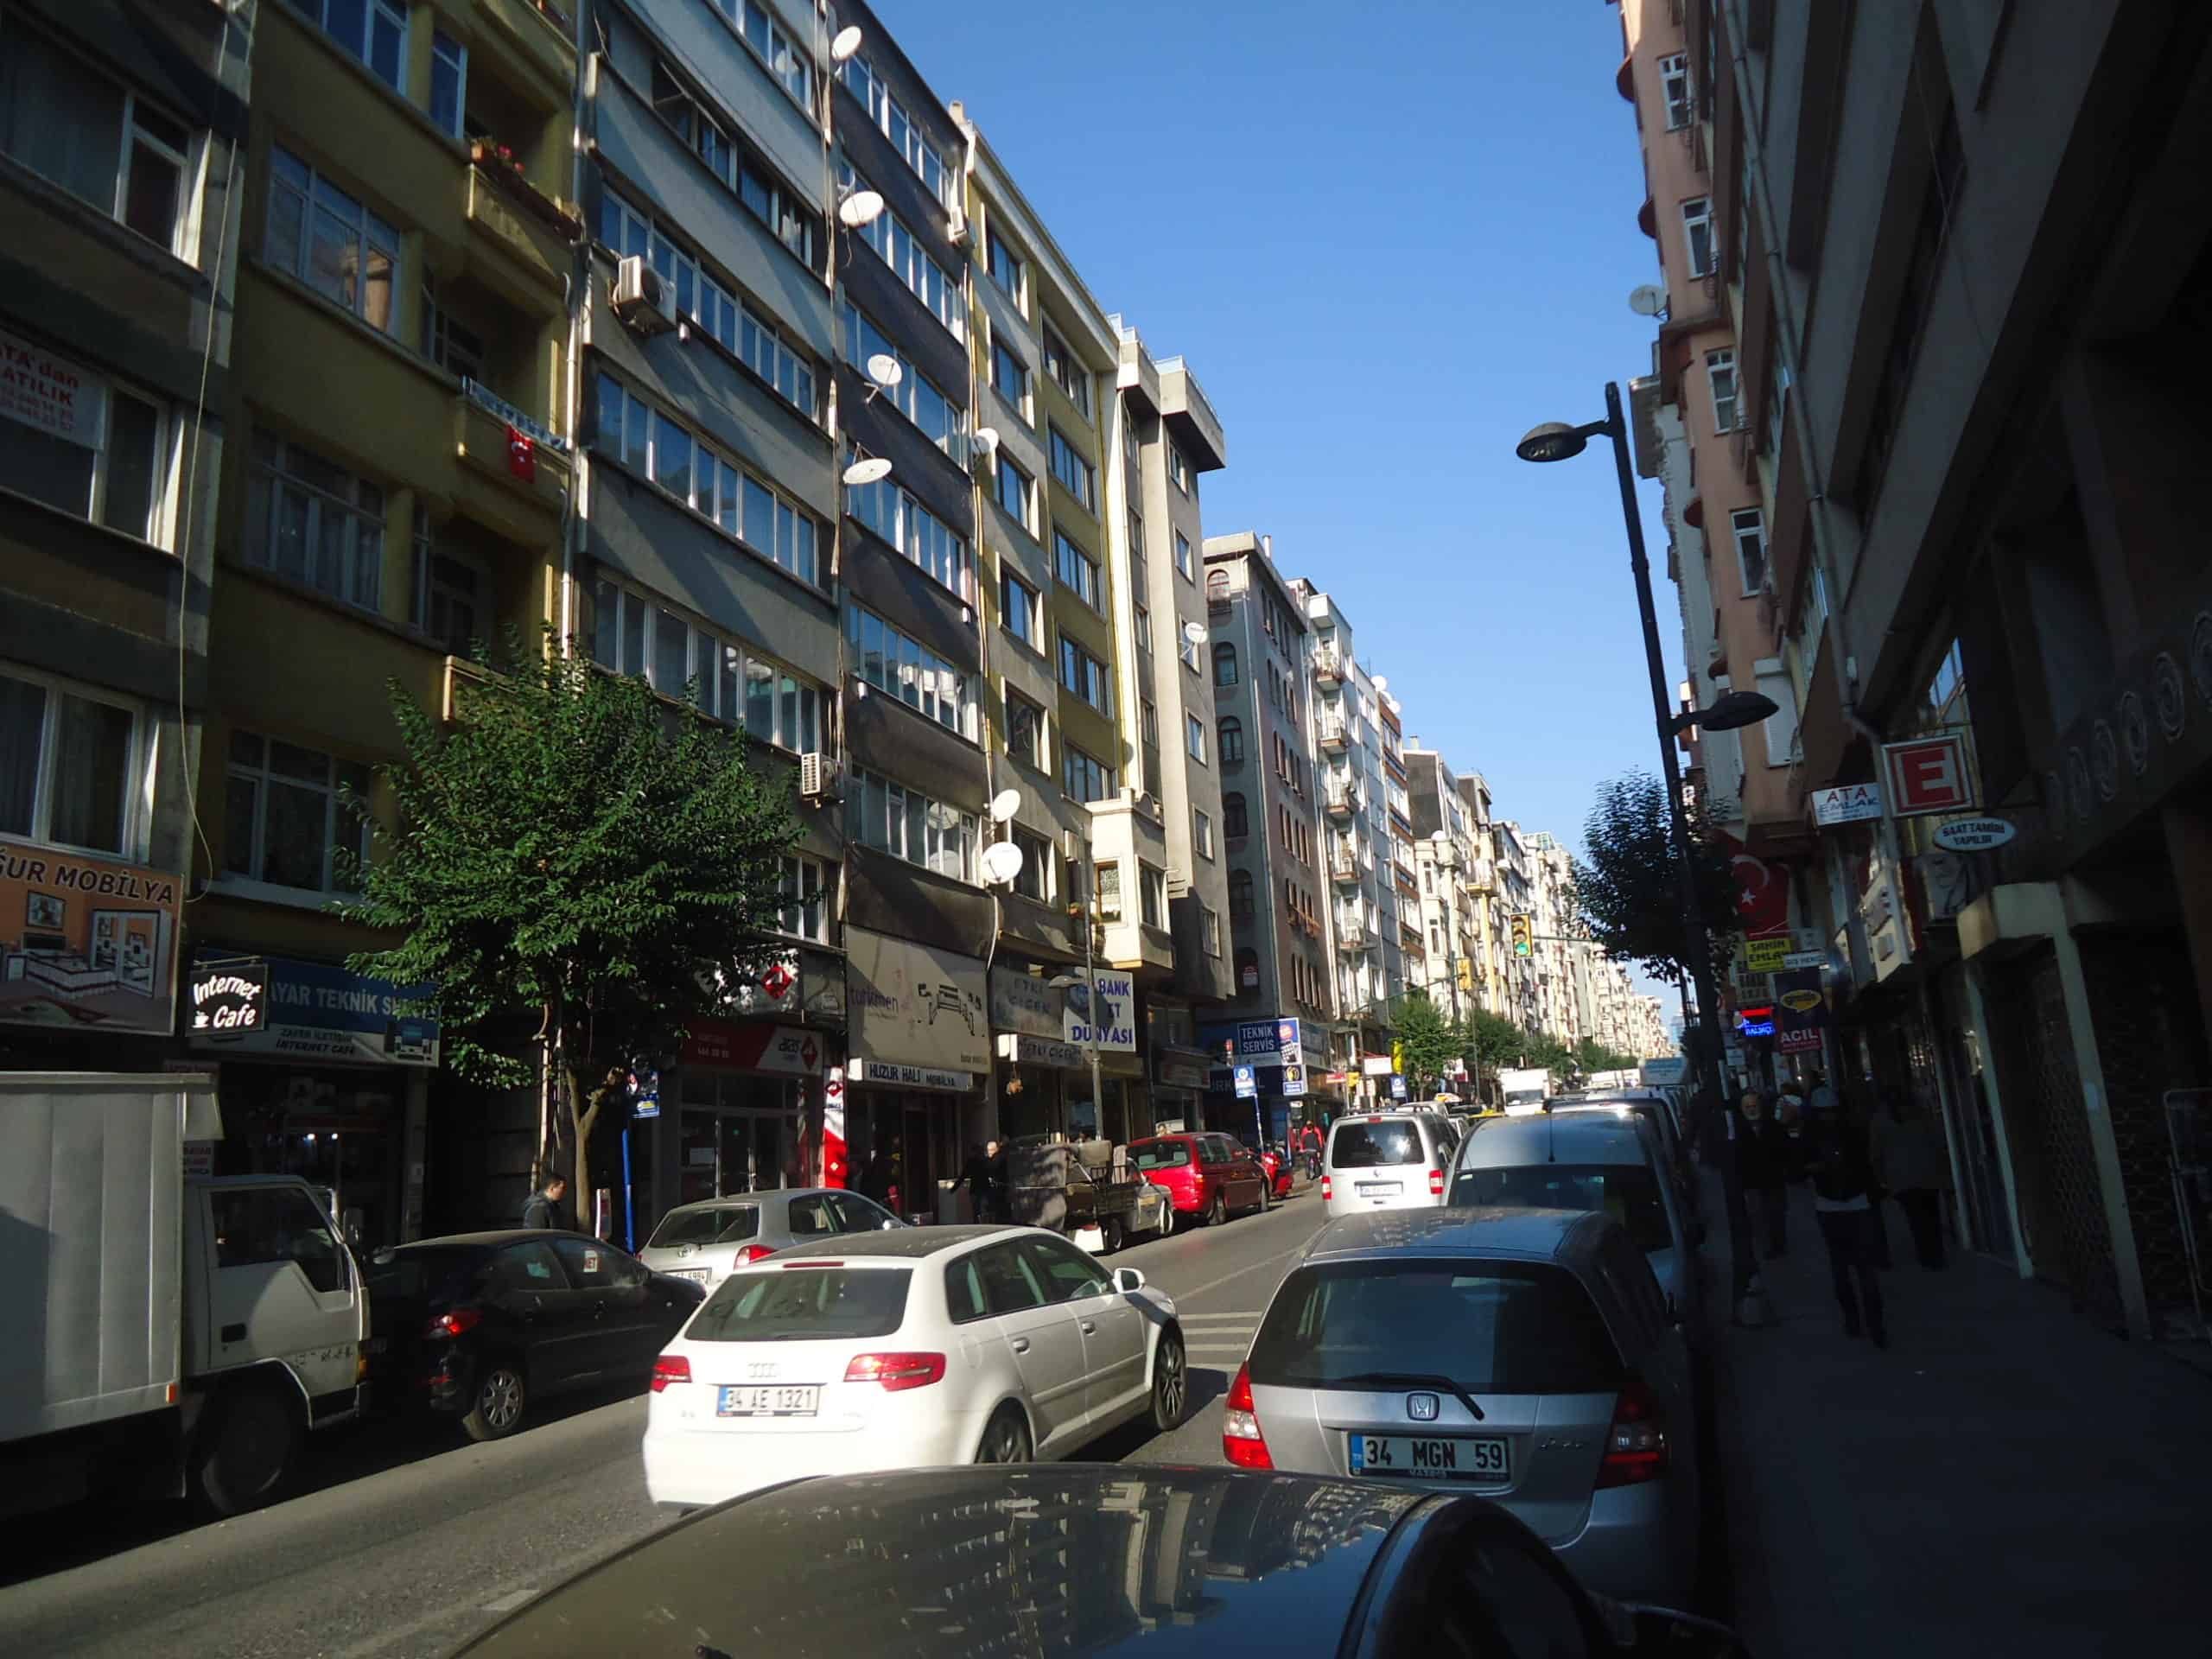 Kurtuluş Street